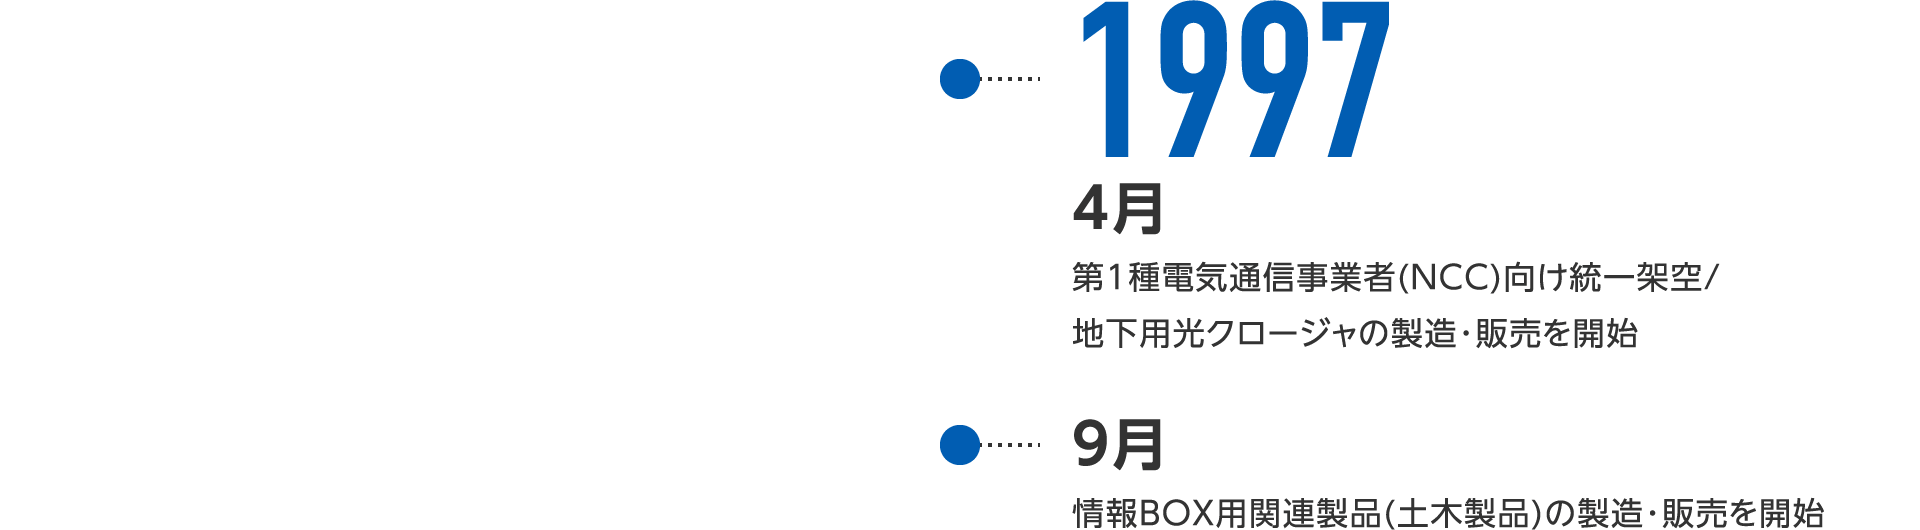 1997年4月-日本初のメタルケーブル用メカニカルクロージャを製造・販売開始、9月-情報BOX用関連製品(土木製品)の製造・販売を開始